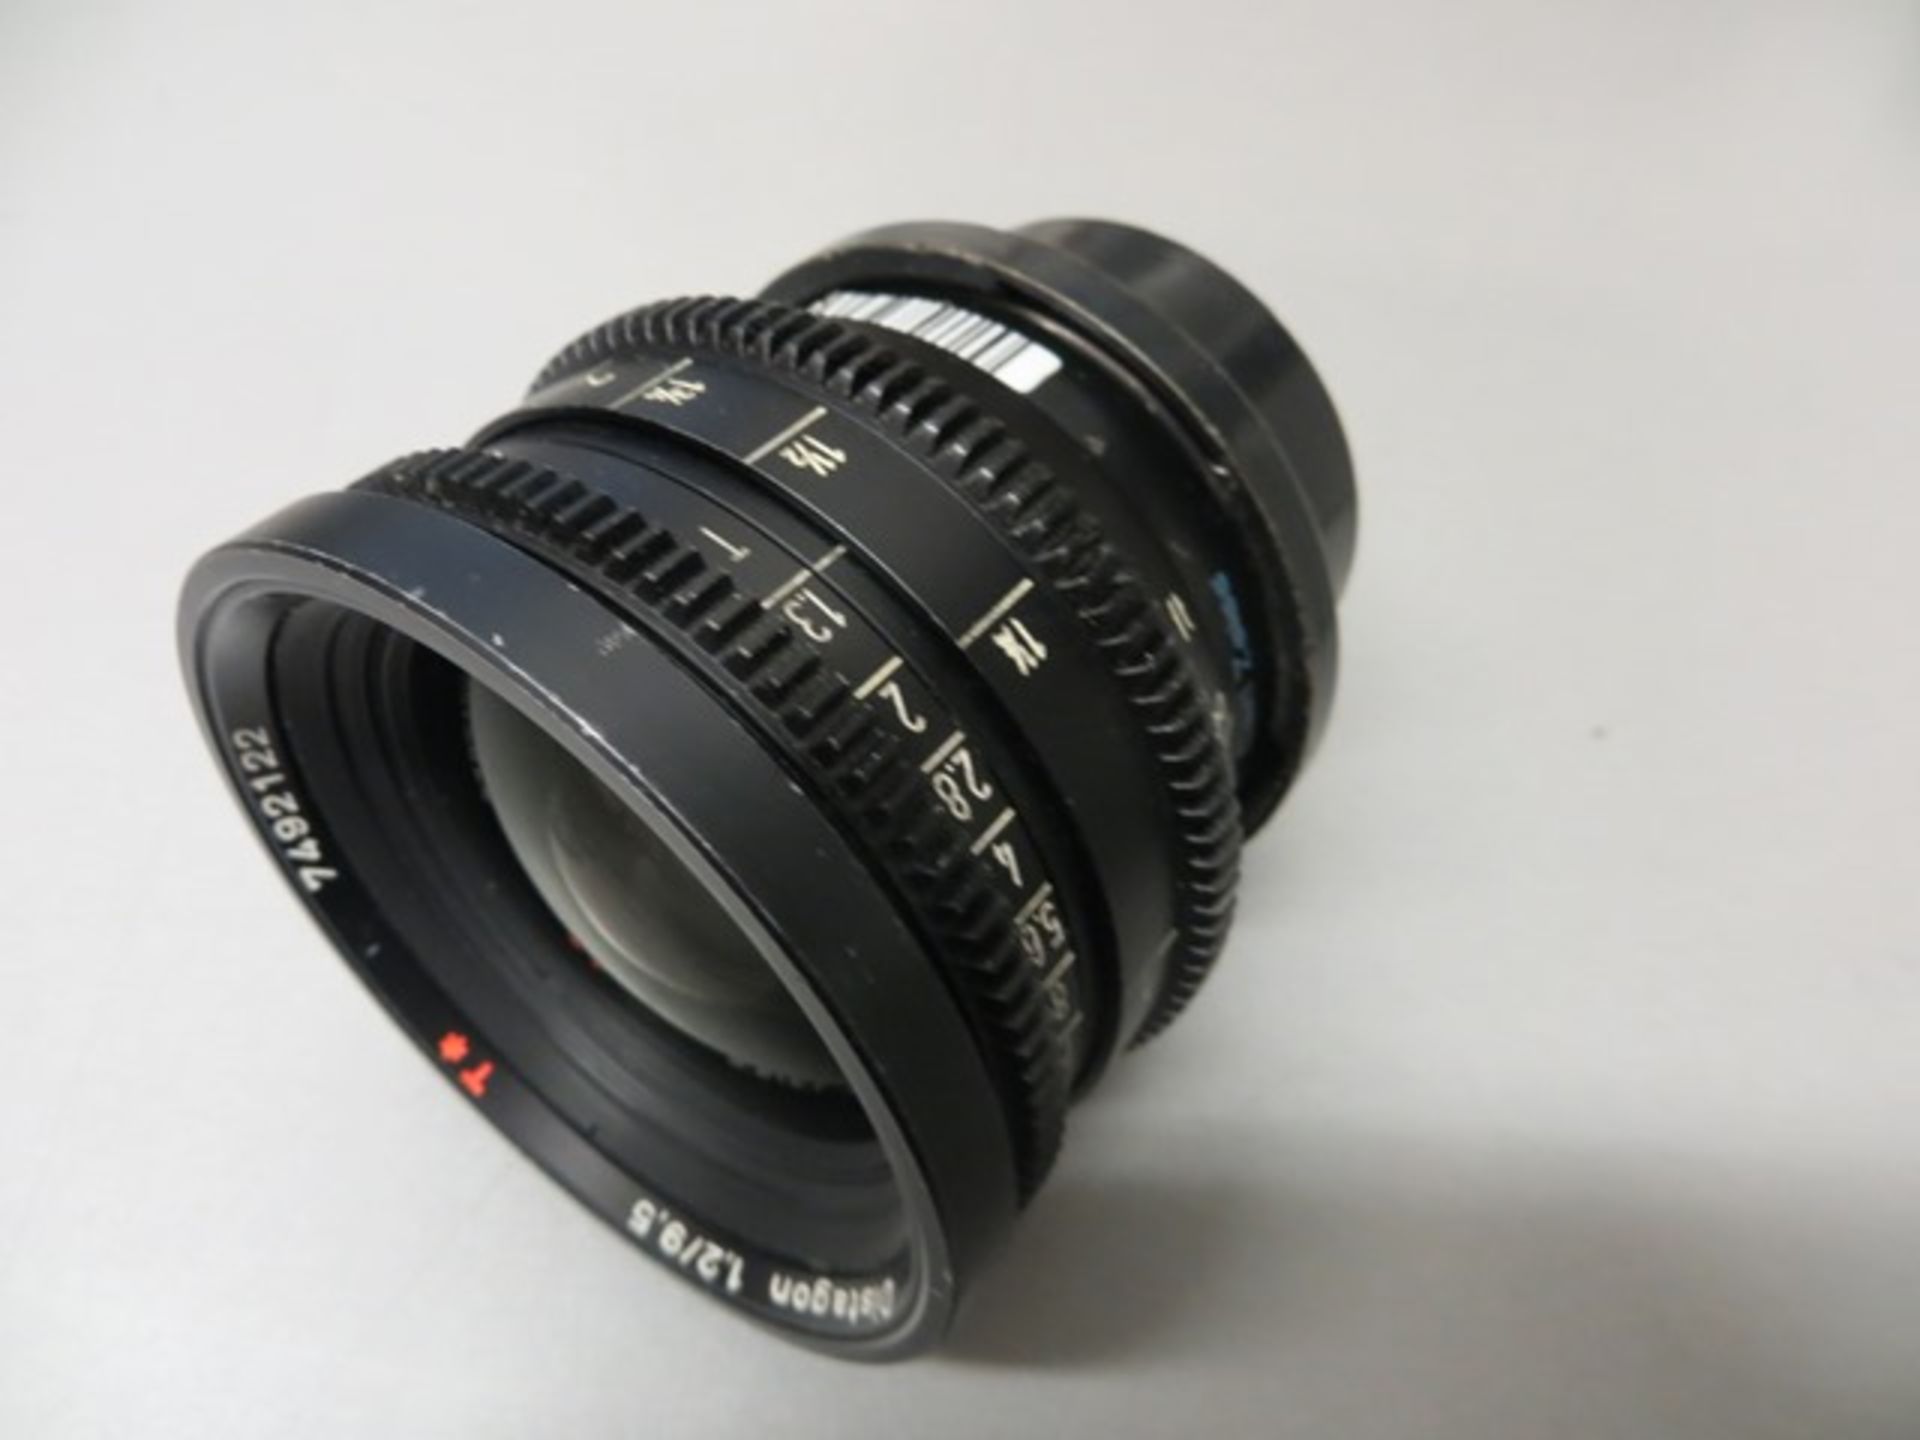 Arriflex Super 16 T 1.3 lens set comprising 9.5mm s/n 7492122, 12mm s/n 7492232, 16mm s/n - Image 3 of 6